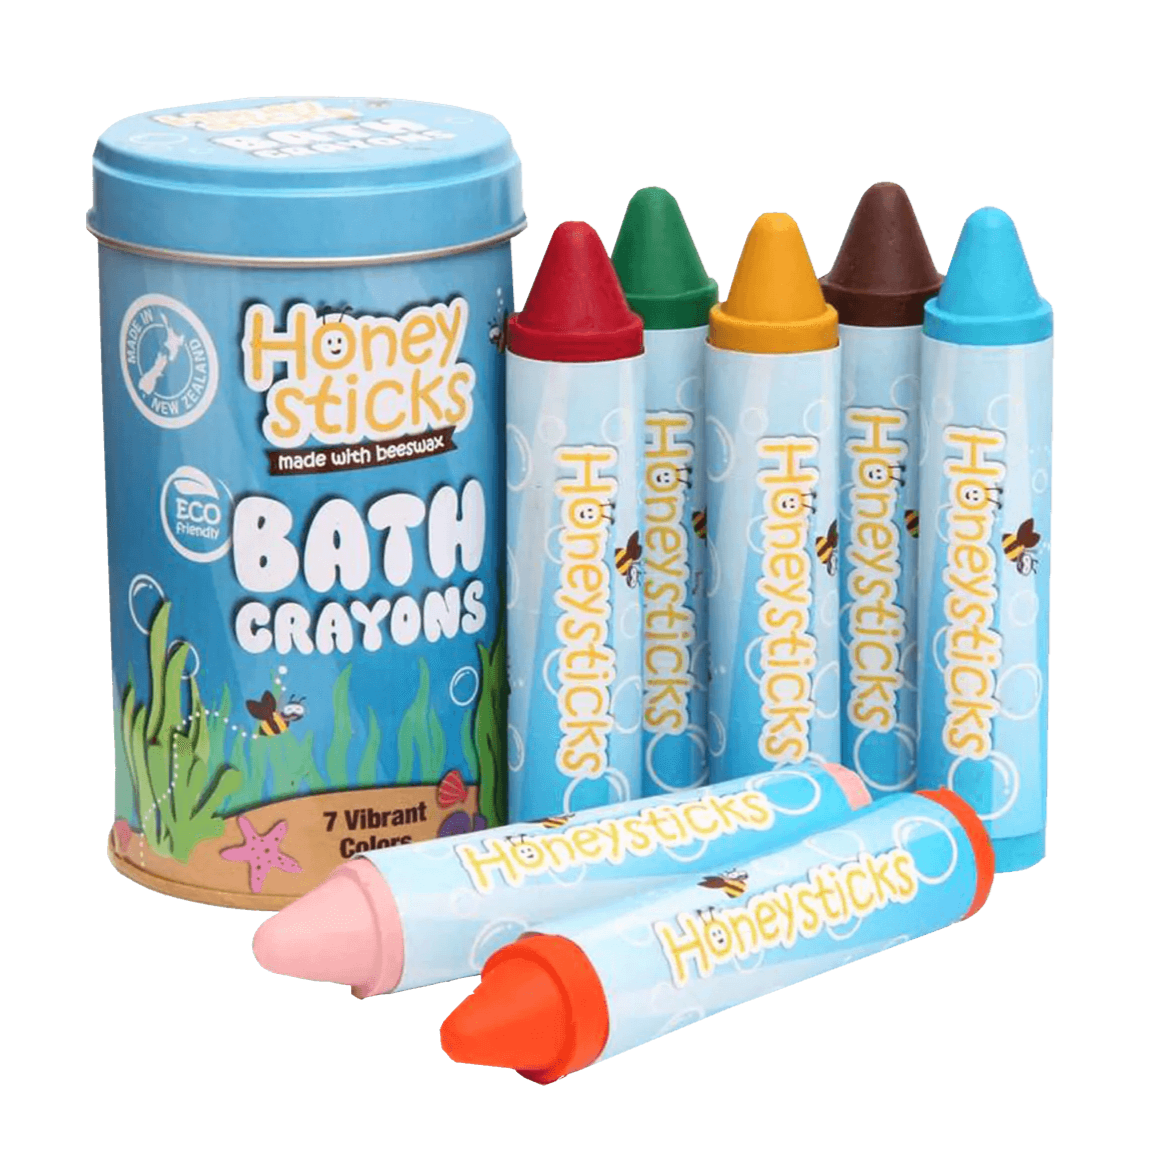 Honeysticks Bath Crayons, Natural Soy & Beeswax Bath Toys available at Bear & Moo